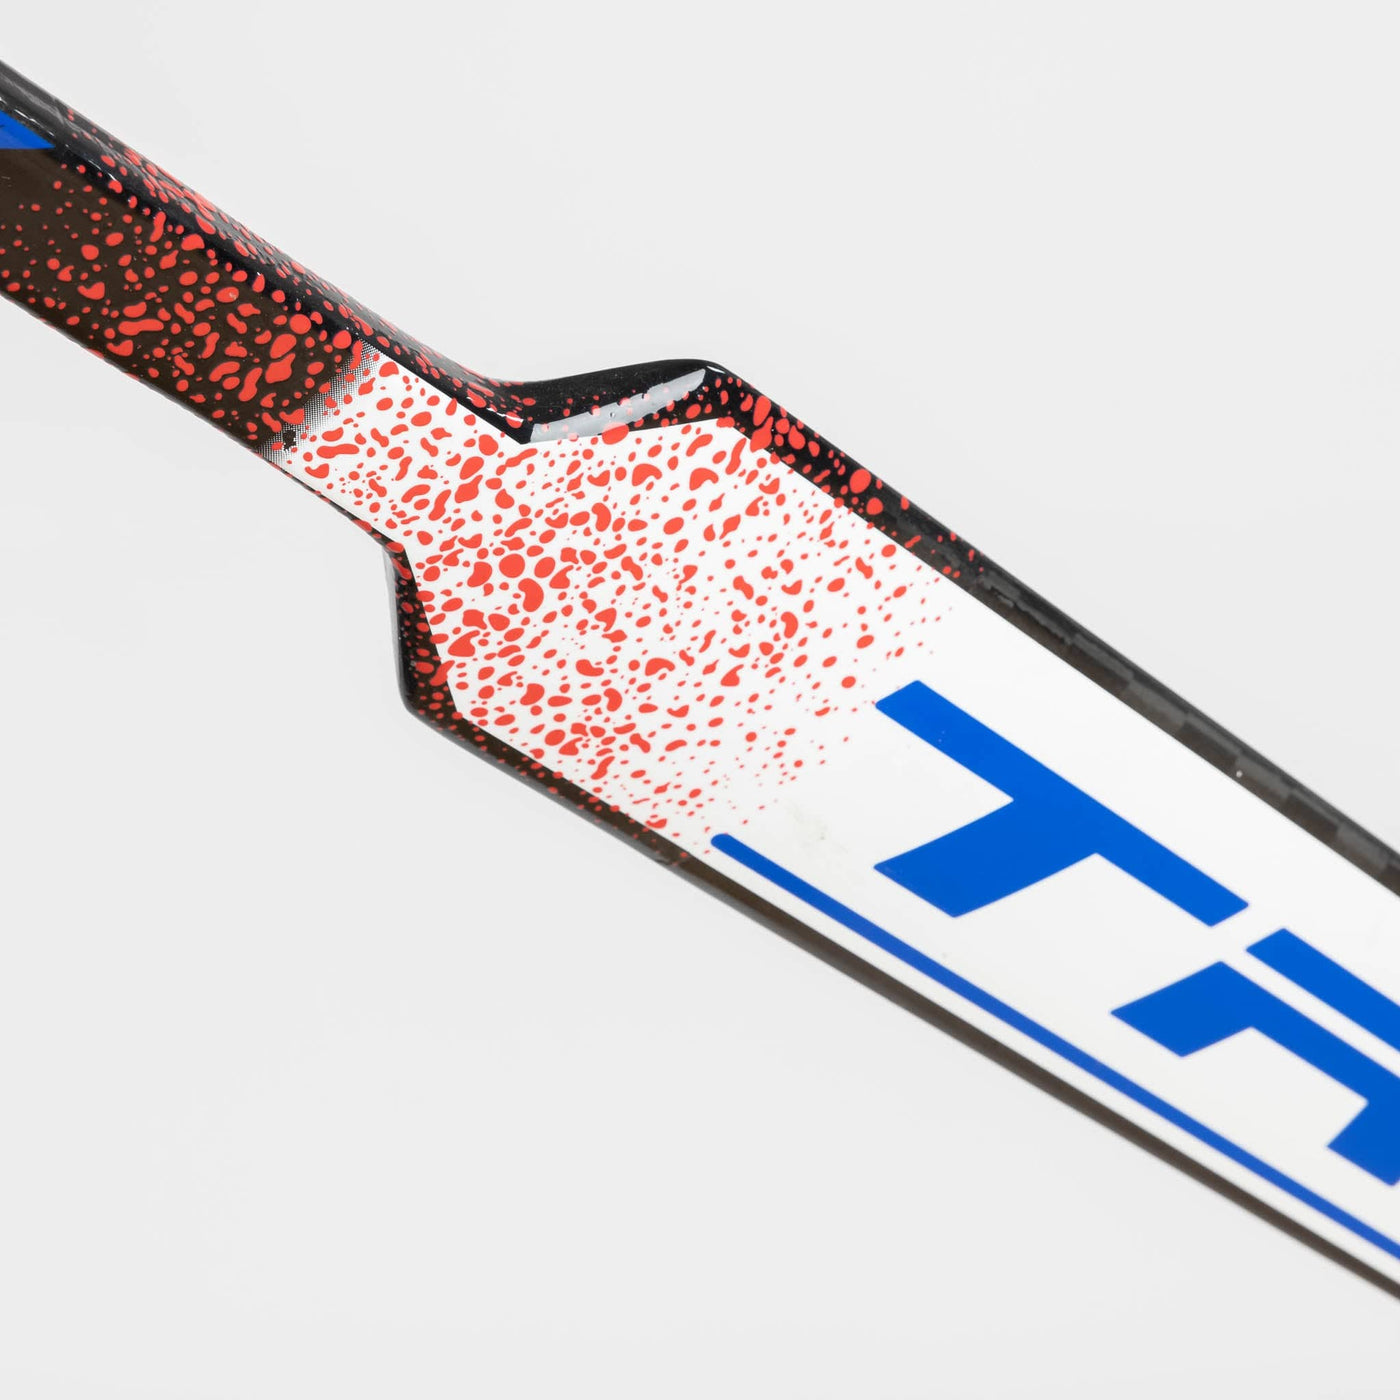 TRUE AX9 Senior Goalie Stick - Custom Color - The Hockey Shop Source For Sports